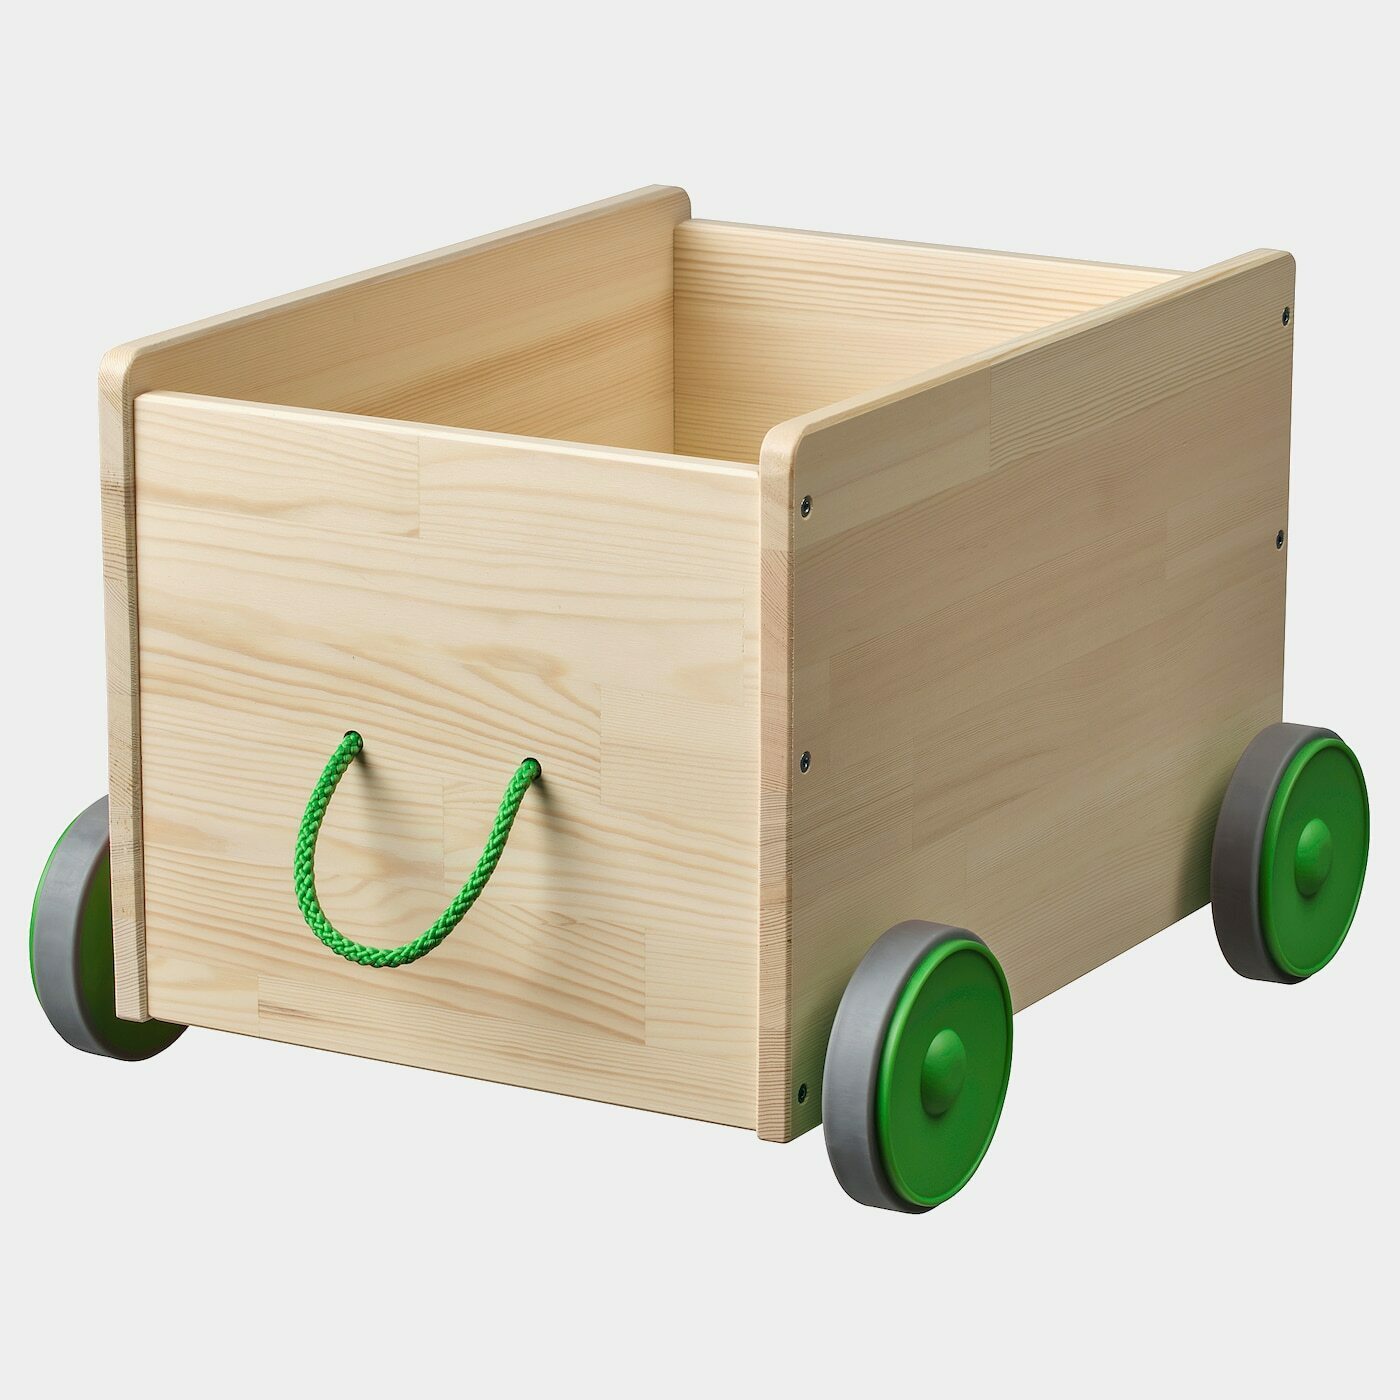 FLISAT Spielzeugwagen  - Kleinaufbewahrung - Babyausstattung & Kinderzimmerzubehör Ideen für dein Zuhause von Home Trends. Babyausstattung & Kinderzimmerzubehör Trends von Social Media Influencer für dein Skandi Zuhause.